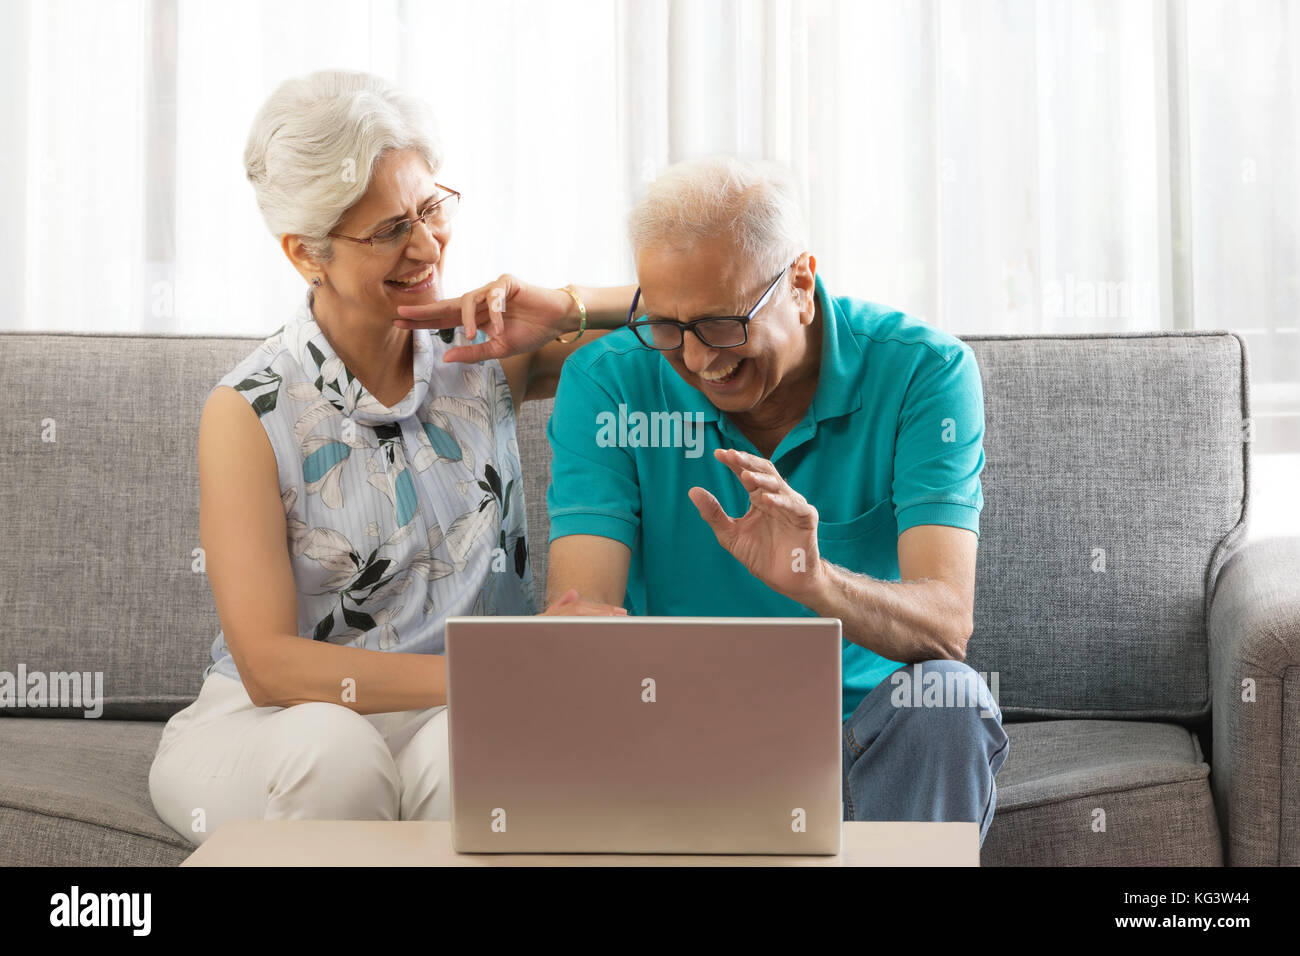 Smiling senior couple using laptop sitting on sofa Stock Photo